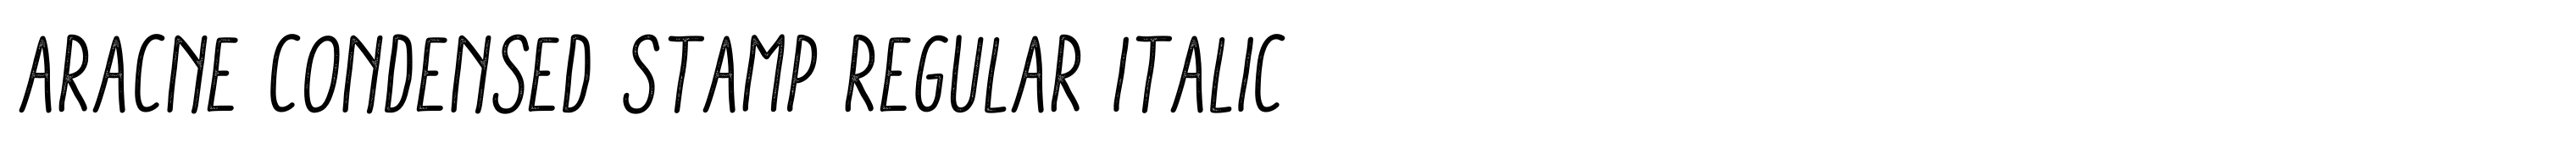 Aracne Condensed Stamp Regular Italic